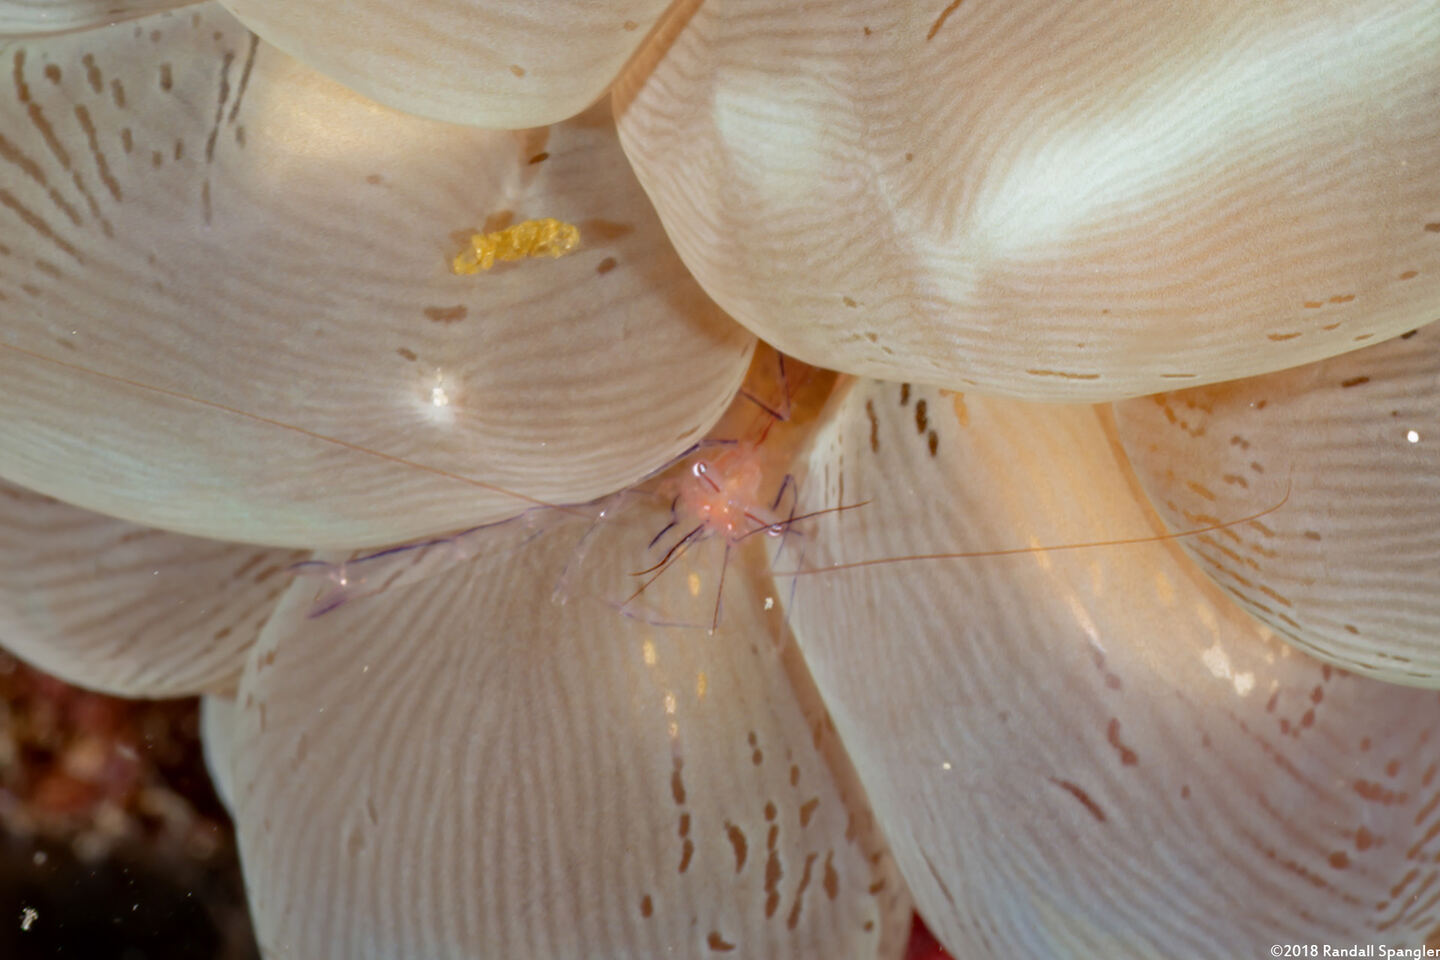 Vir philippinensis (Bubble Coral Shrimp)